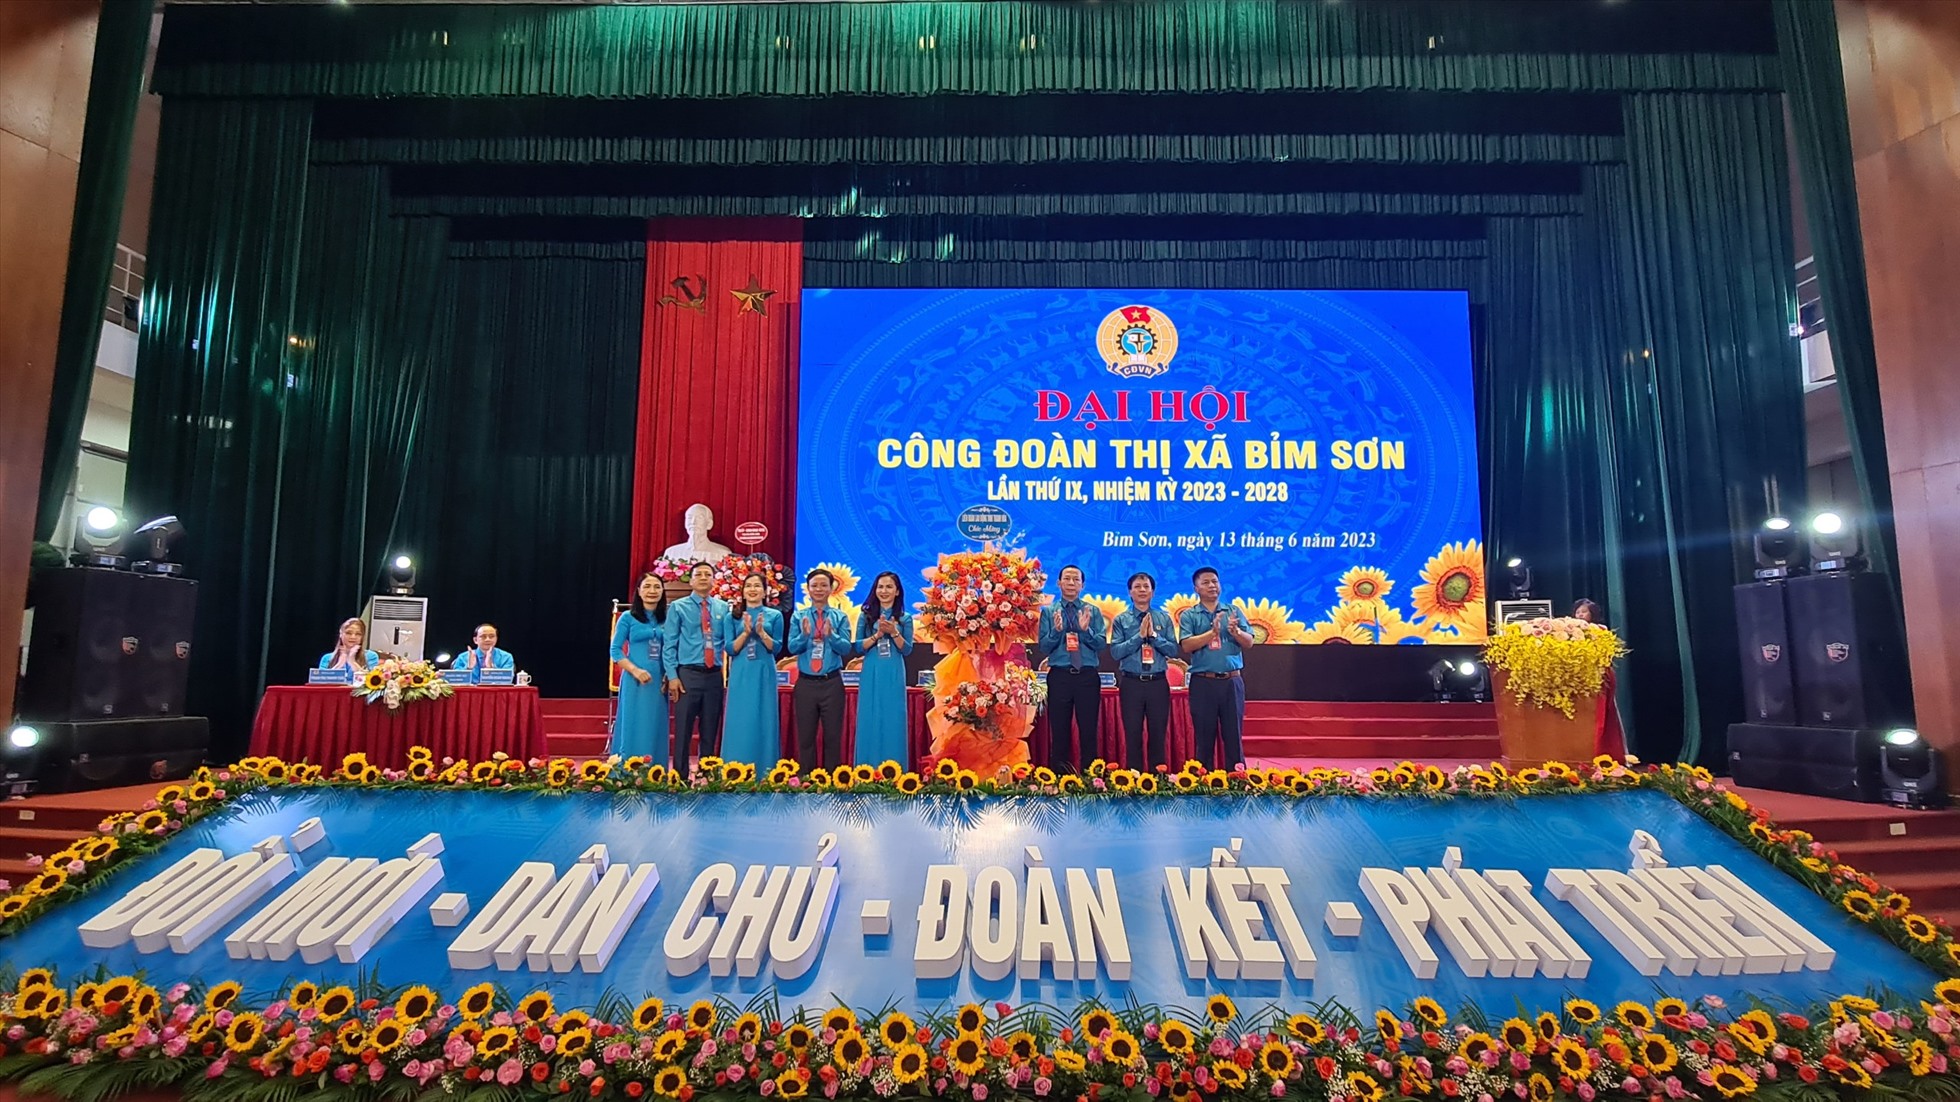 Đại diện lãnh đạo LĐLĐ tỉnh Thanh Hóa tặng hoa chúc mừng Đại hội Công đoàn thị xã Bỉm Sơn (nhiệm kỳ 2023-2028). Ảnh: Minh Hoàng